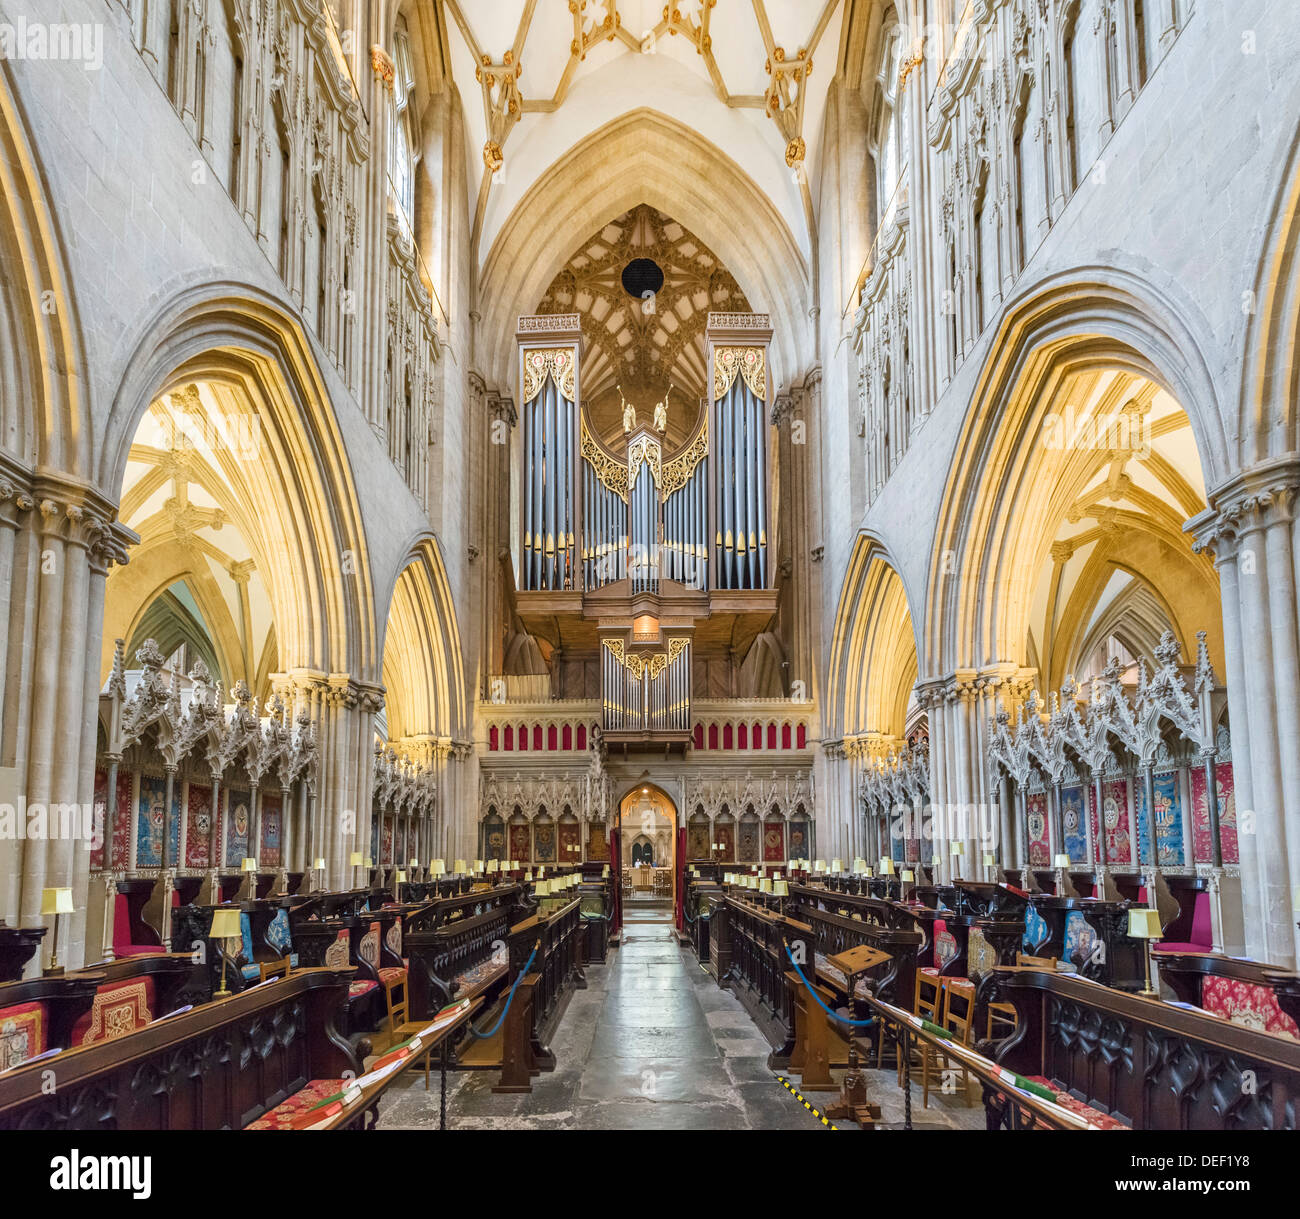 Interno della Cattedrale di Wells, pozzi, Somerset, Inghilterra, Regno Unito Foto Stock